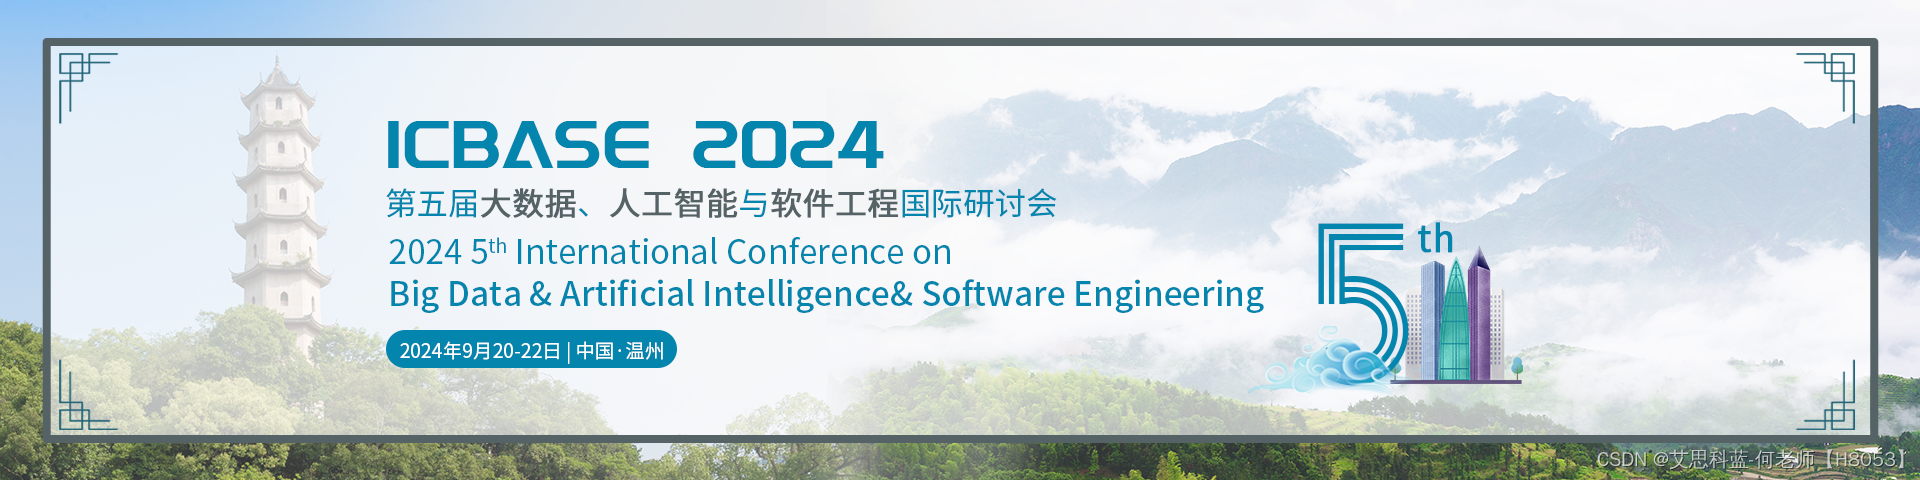 【征稿已开启】第五大数据、人工智能与软件工程国际研讨会（ICBASE 2024）